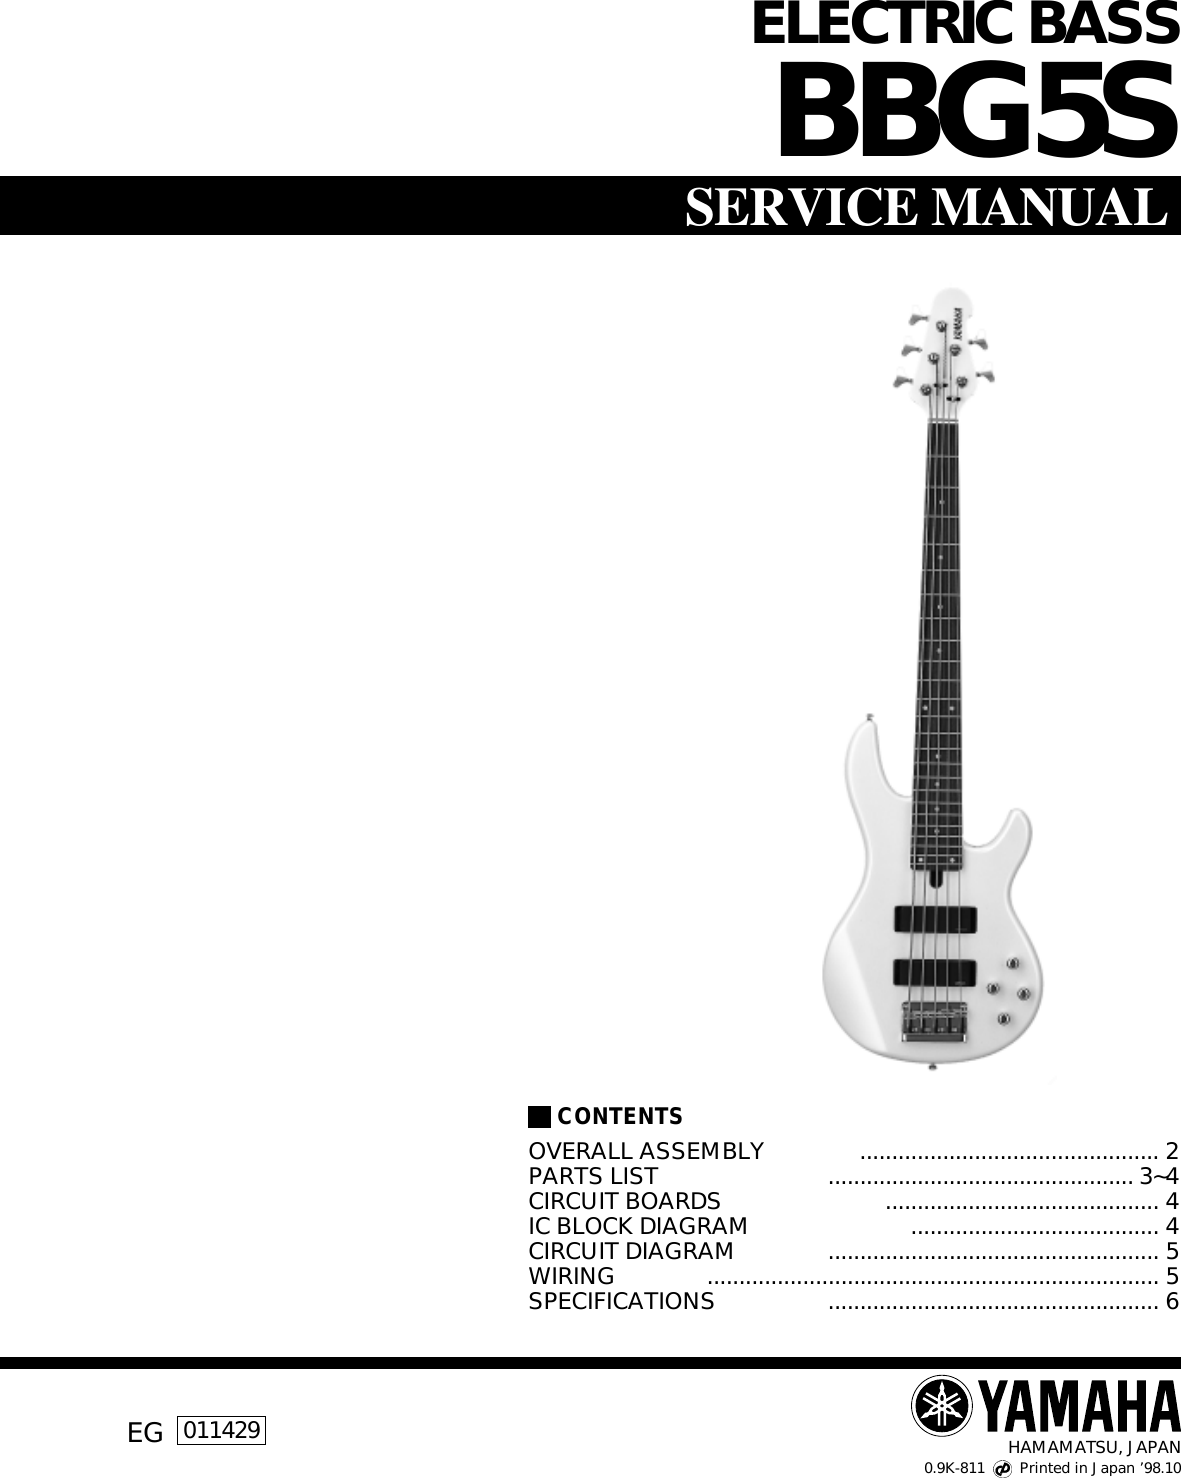 Yamaha Guitar Bbg5S Users Manual ELECTRIC BASS